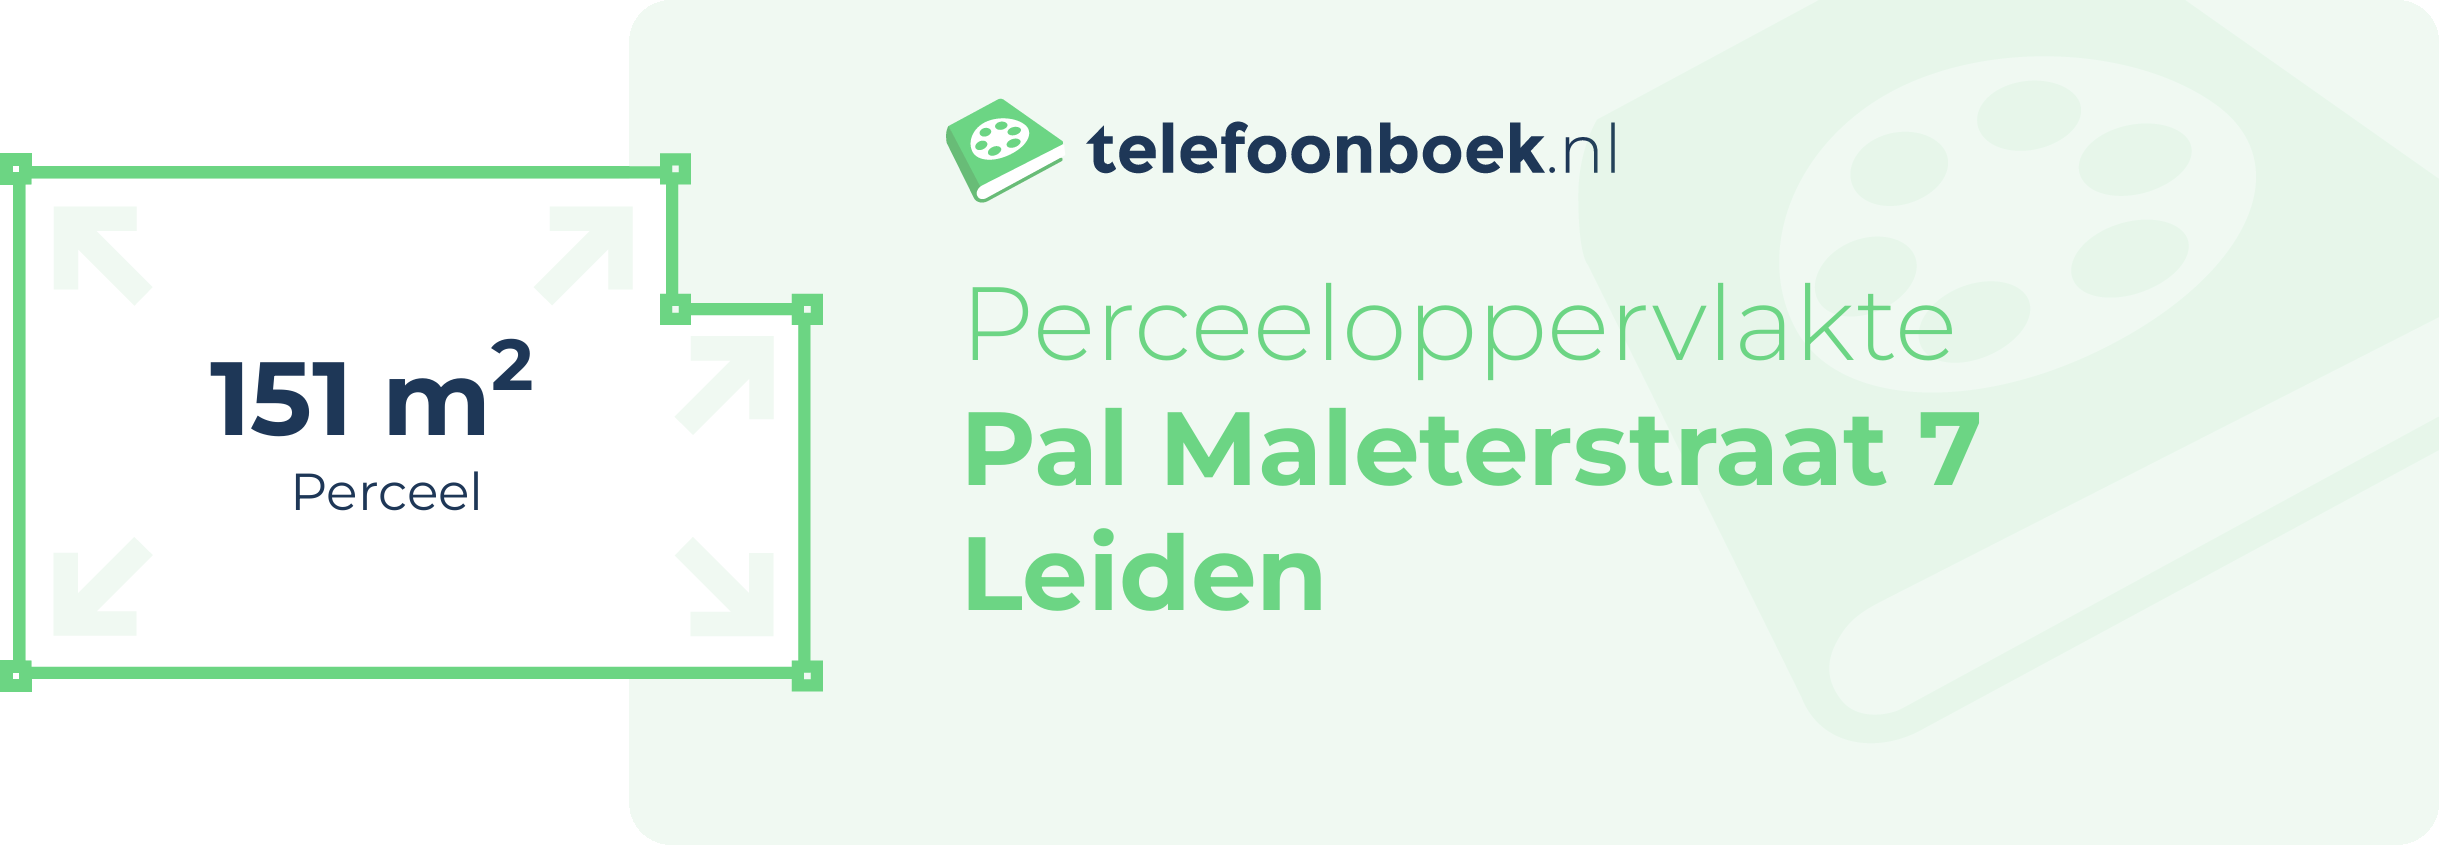 Perceeloppervlakte Pal Maleterstraat 7 Leiden